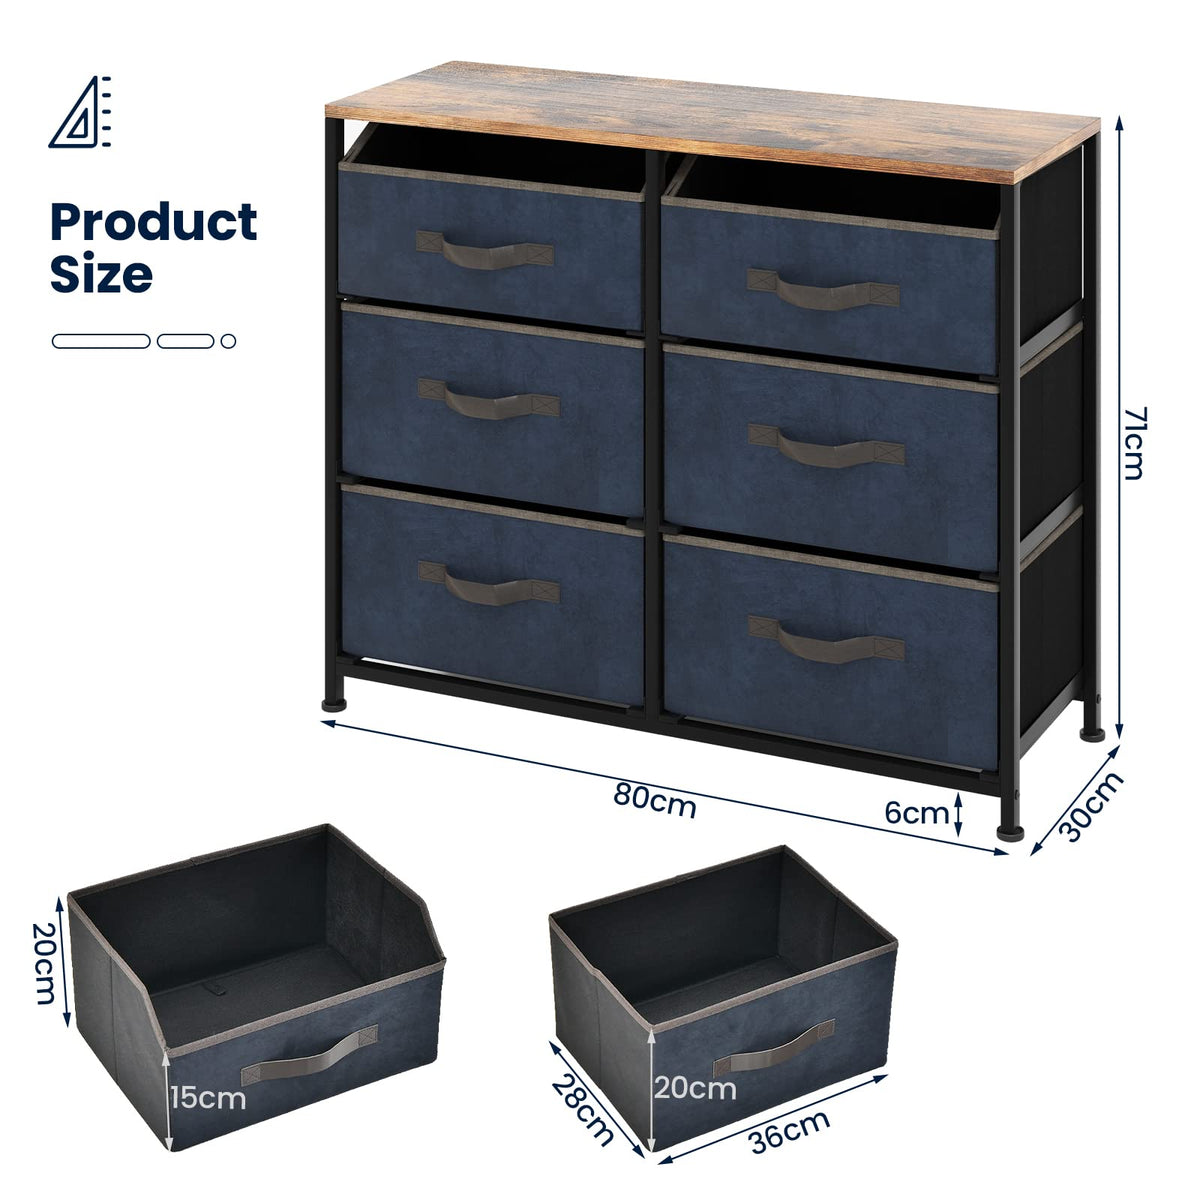 Giantex 6-Drawer Dresser Organizer, Fabric Dresser Storage Cabinet